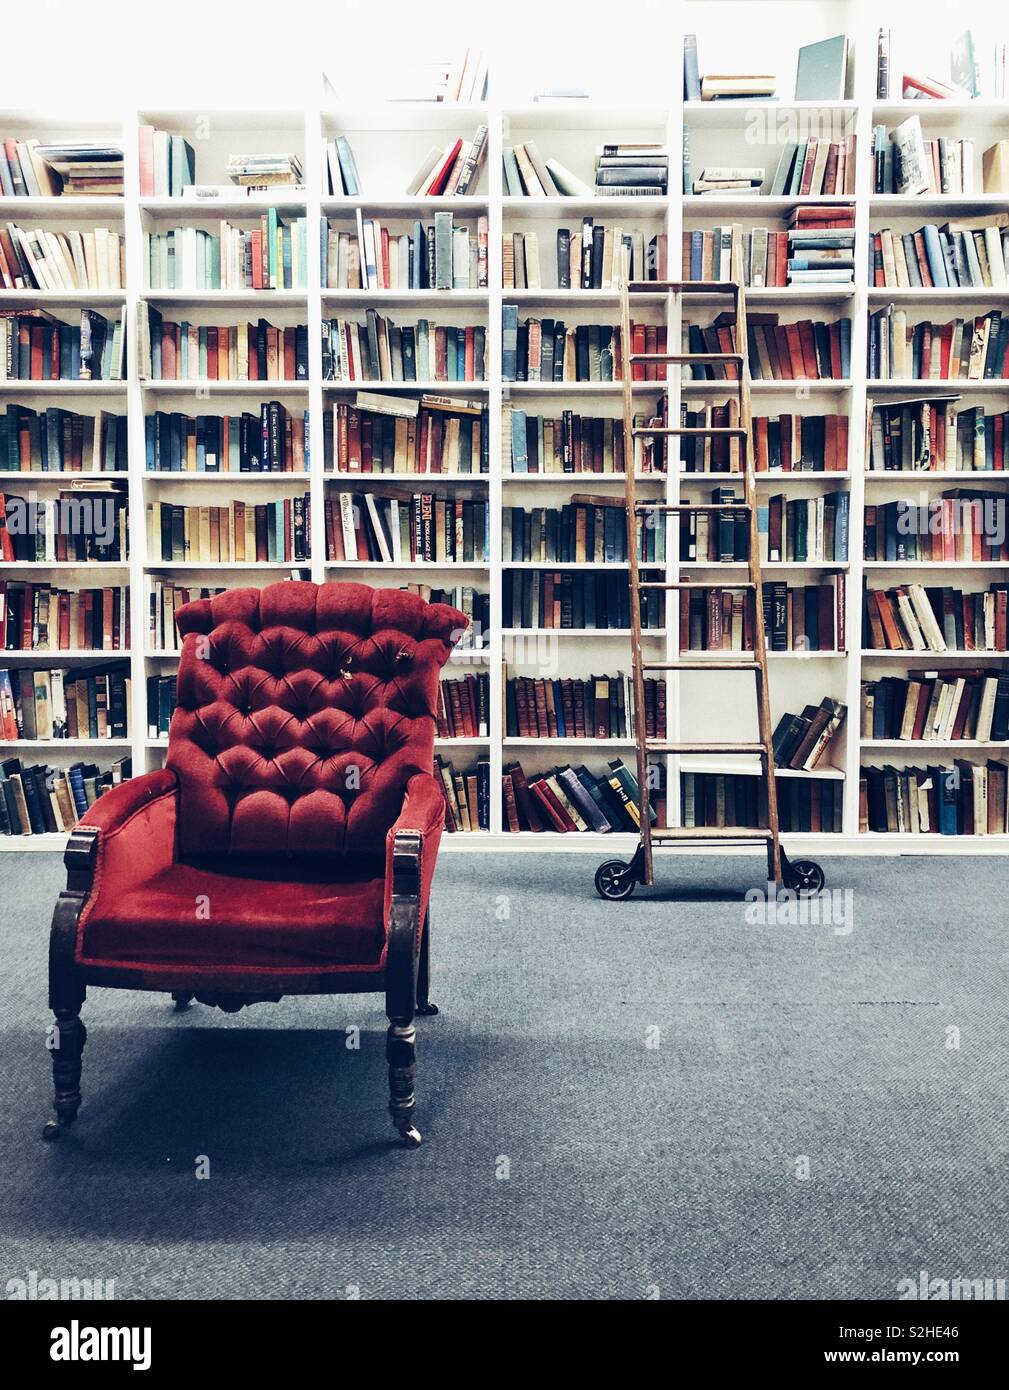 La bibliothèque de style vintage avec le matériel roulant et de l'échelle  chaise rouge Photo Stock - Alamy